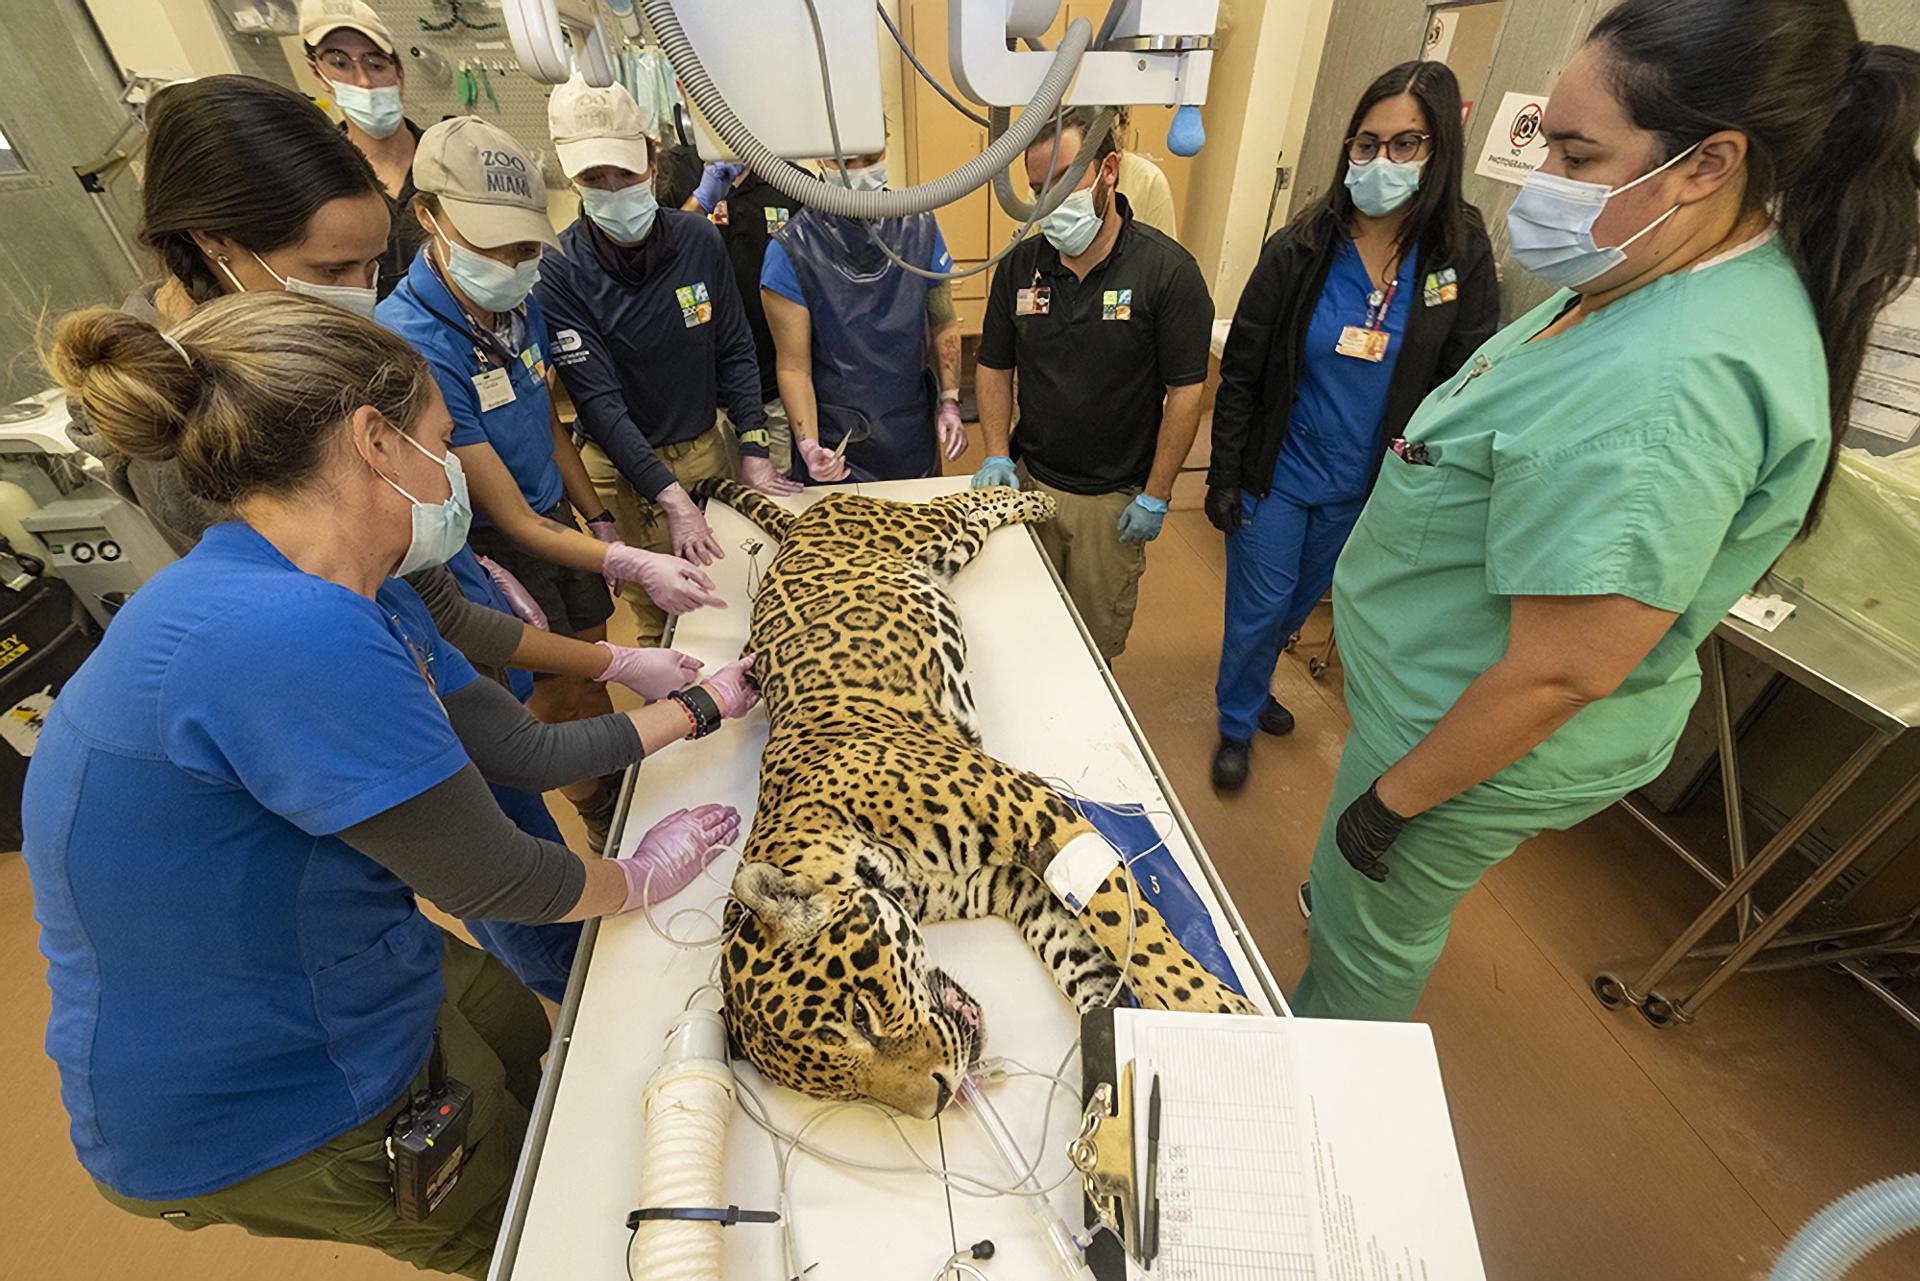 Fotografía cedida por el zoológico de Miami donde aparecen unos especialistas mientras someten a un jaguar, de 18 años, a una revisión médica el 20 de marzo en la clínica de animales en Miami, Florida (EE. UU). EFE/Ron Magill/Zoo Miami /SOLO USO EDITORIAL/NO VENTAS/SOLO DISPONIBLE PARA ILUSTRAR LA NOTICIA QUE ACOMPAÑA/CRÉDITO OBLIGATORIO
